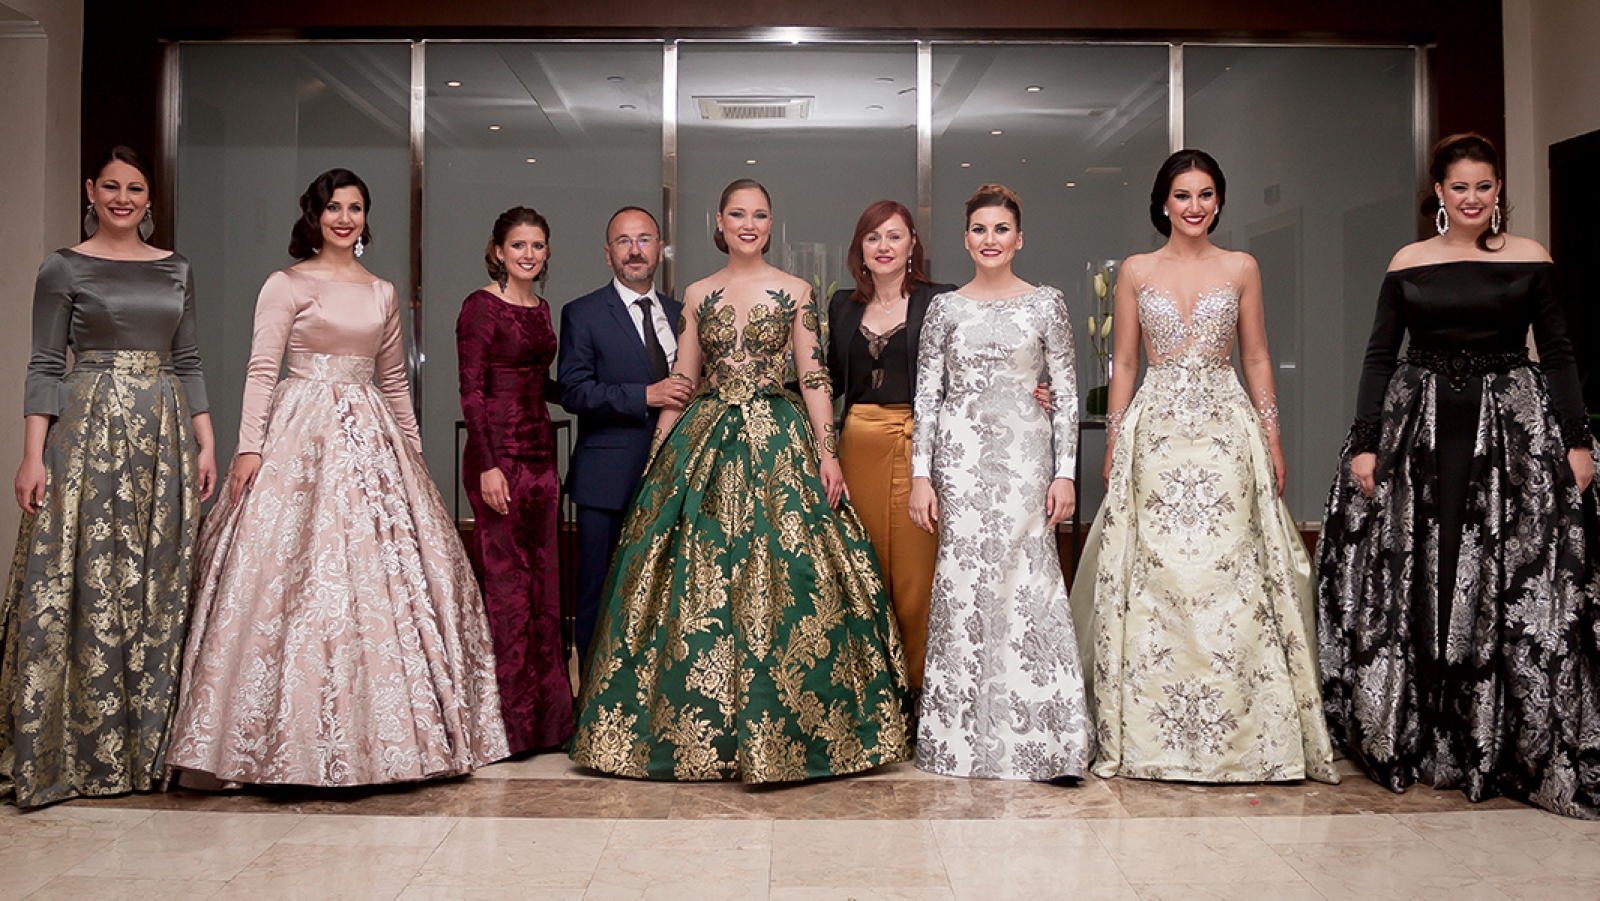 La Bellesa del Foc de Alicante 2016 y sus damas se despiden luciendo nuestras telas en vestidos de gala